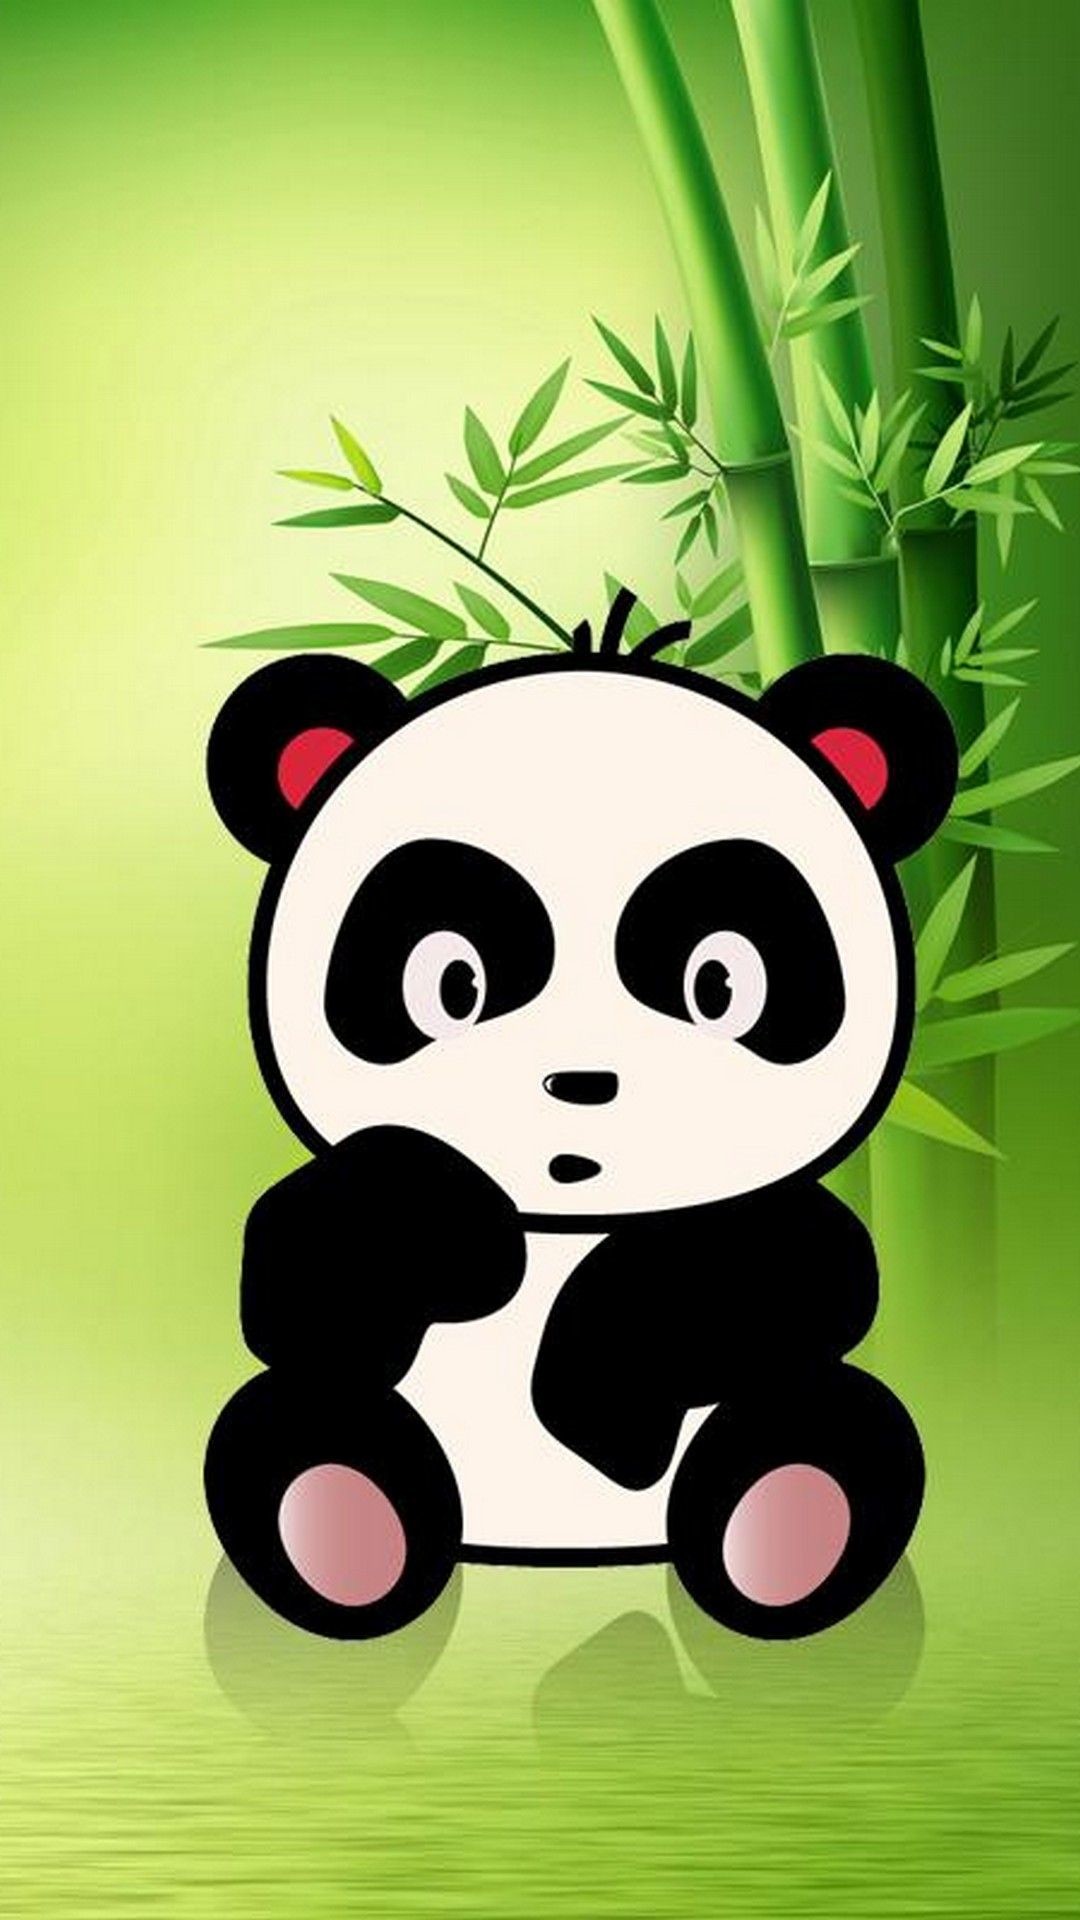 Cute Data Src Cool Cute Panda Wallpaper - Cartoon Panda Wallpaper Panda -  1080x1920 Wallpaper 